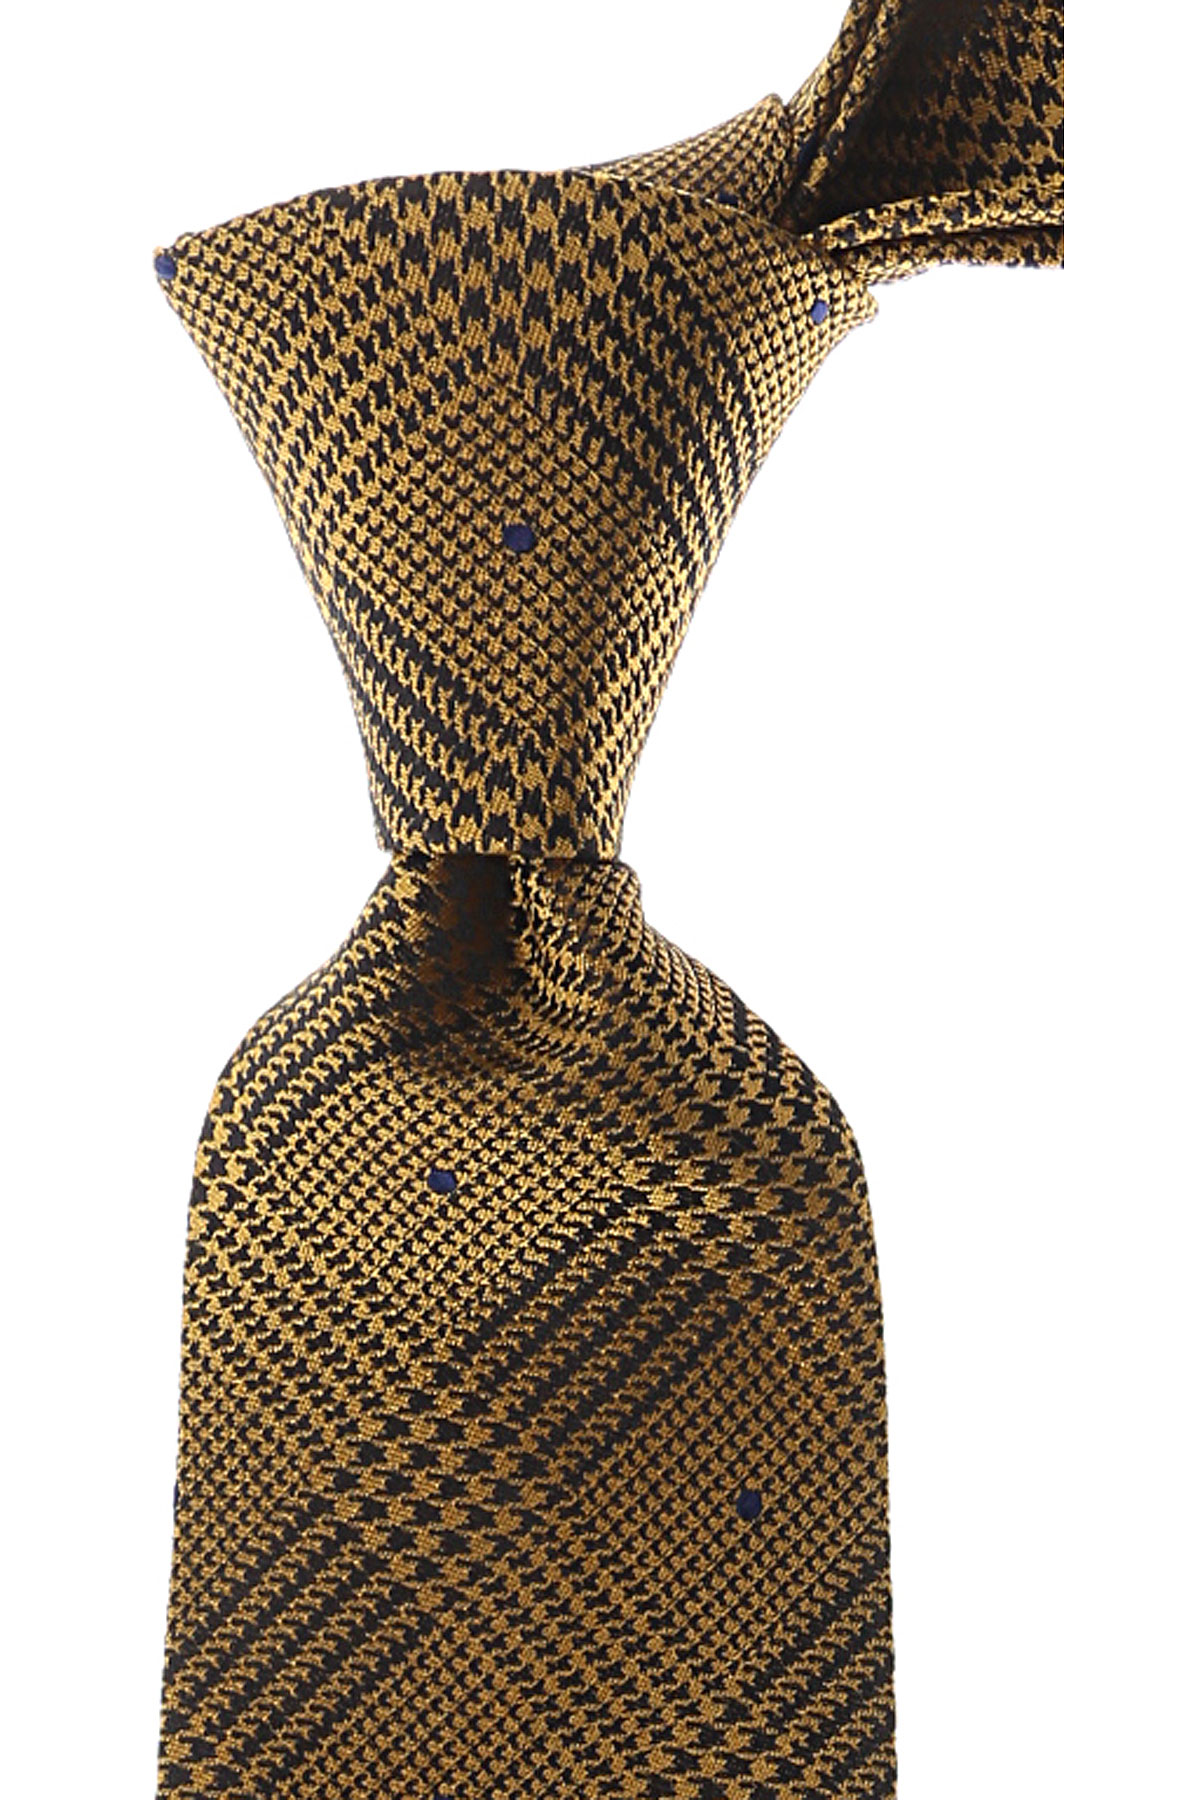 Cravates Gianni Versace , Jaune foncé, Soie, 2017